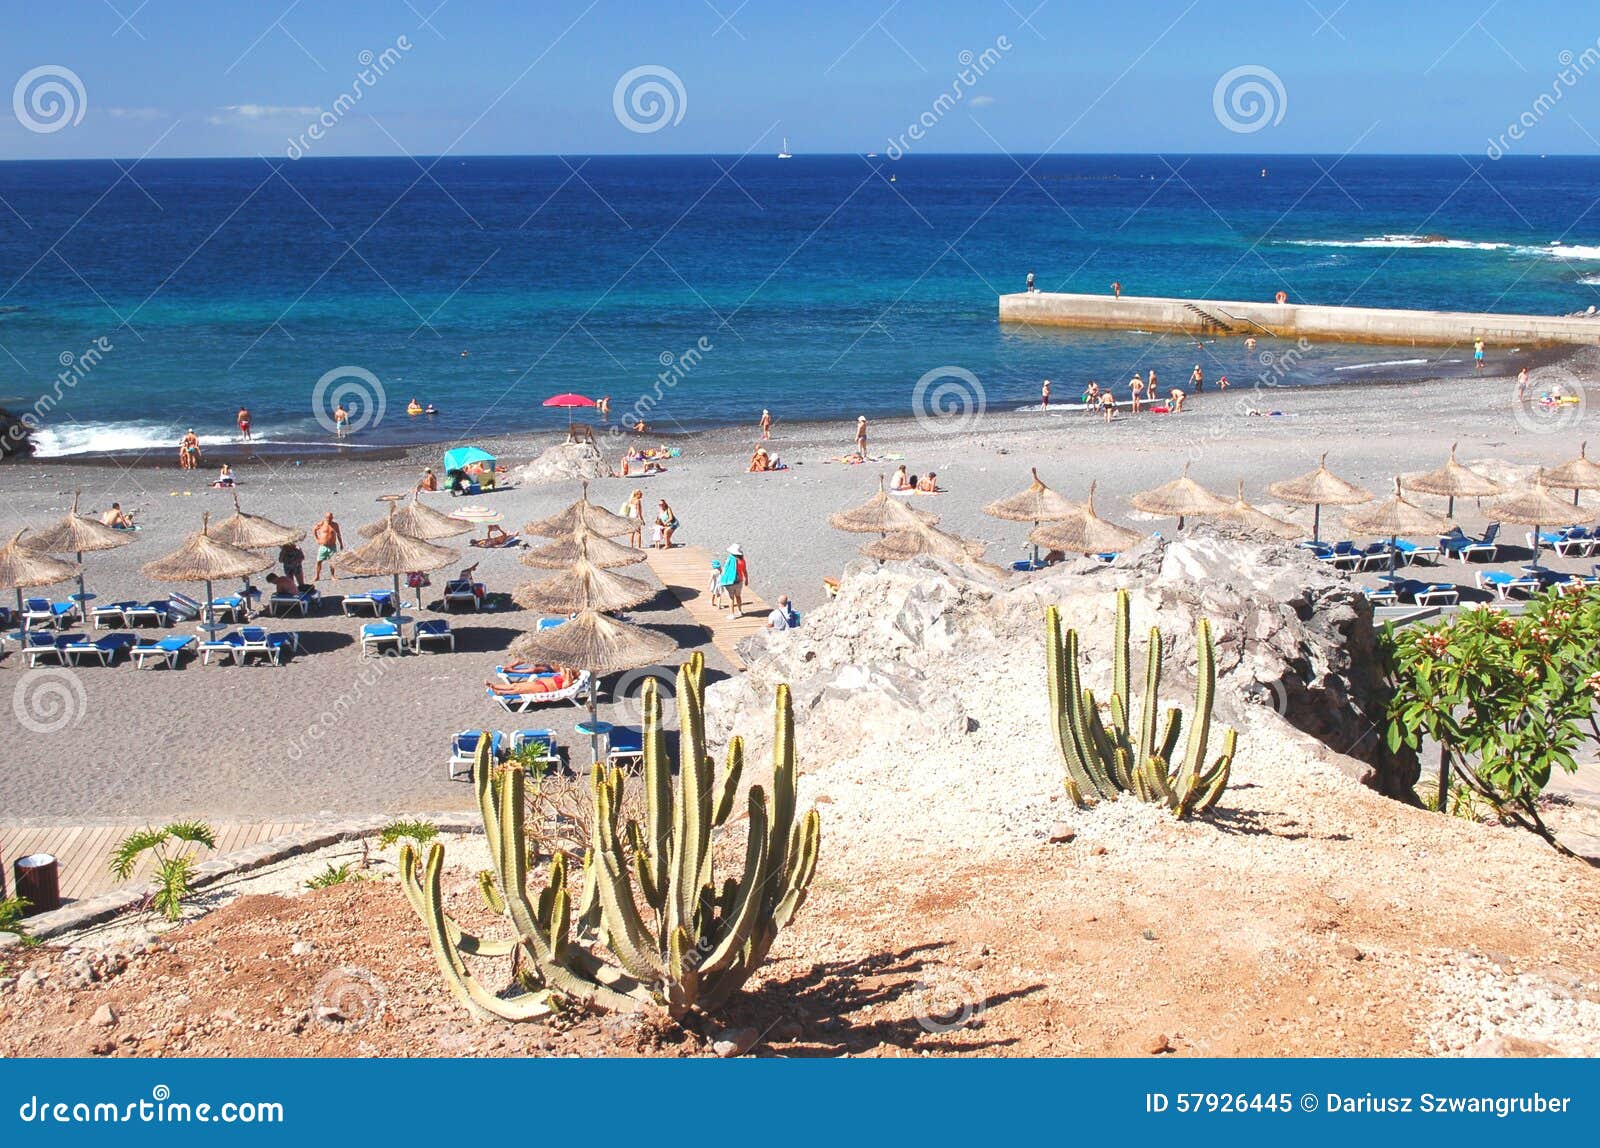 beautiful beach in callao salvaje on tenerife